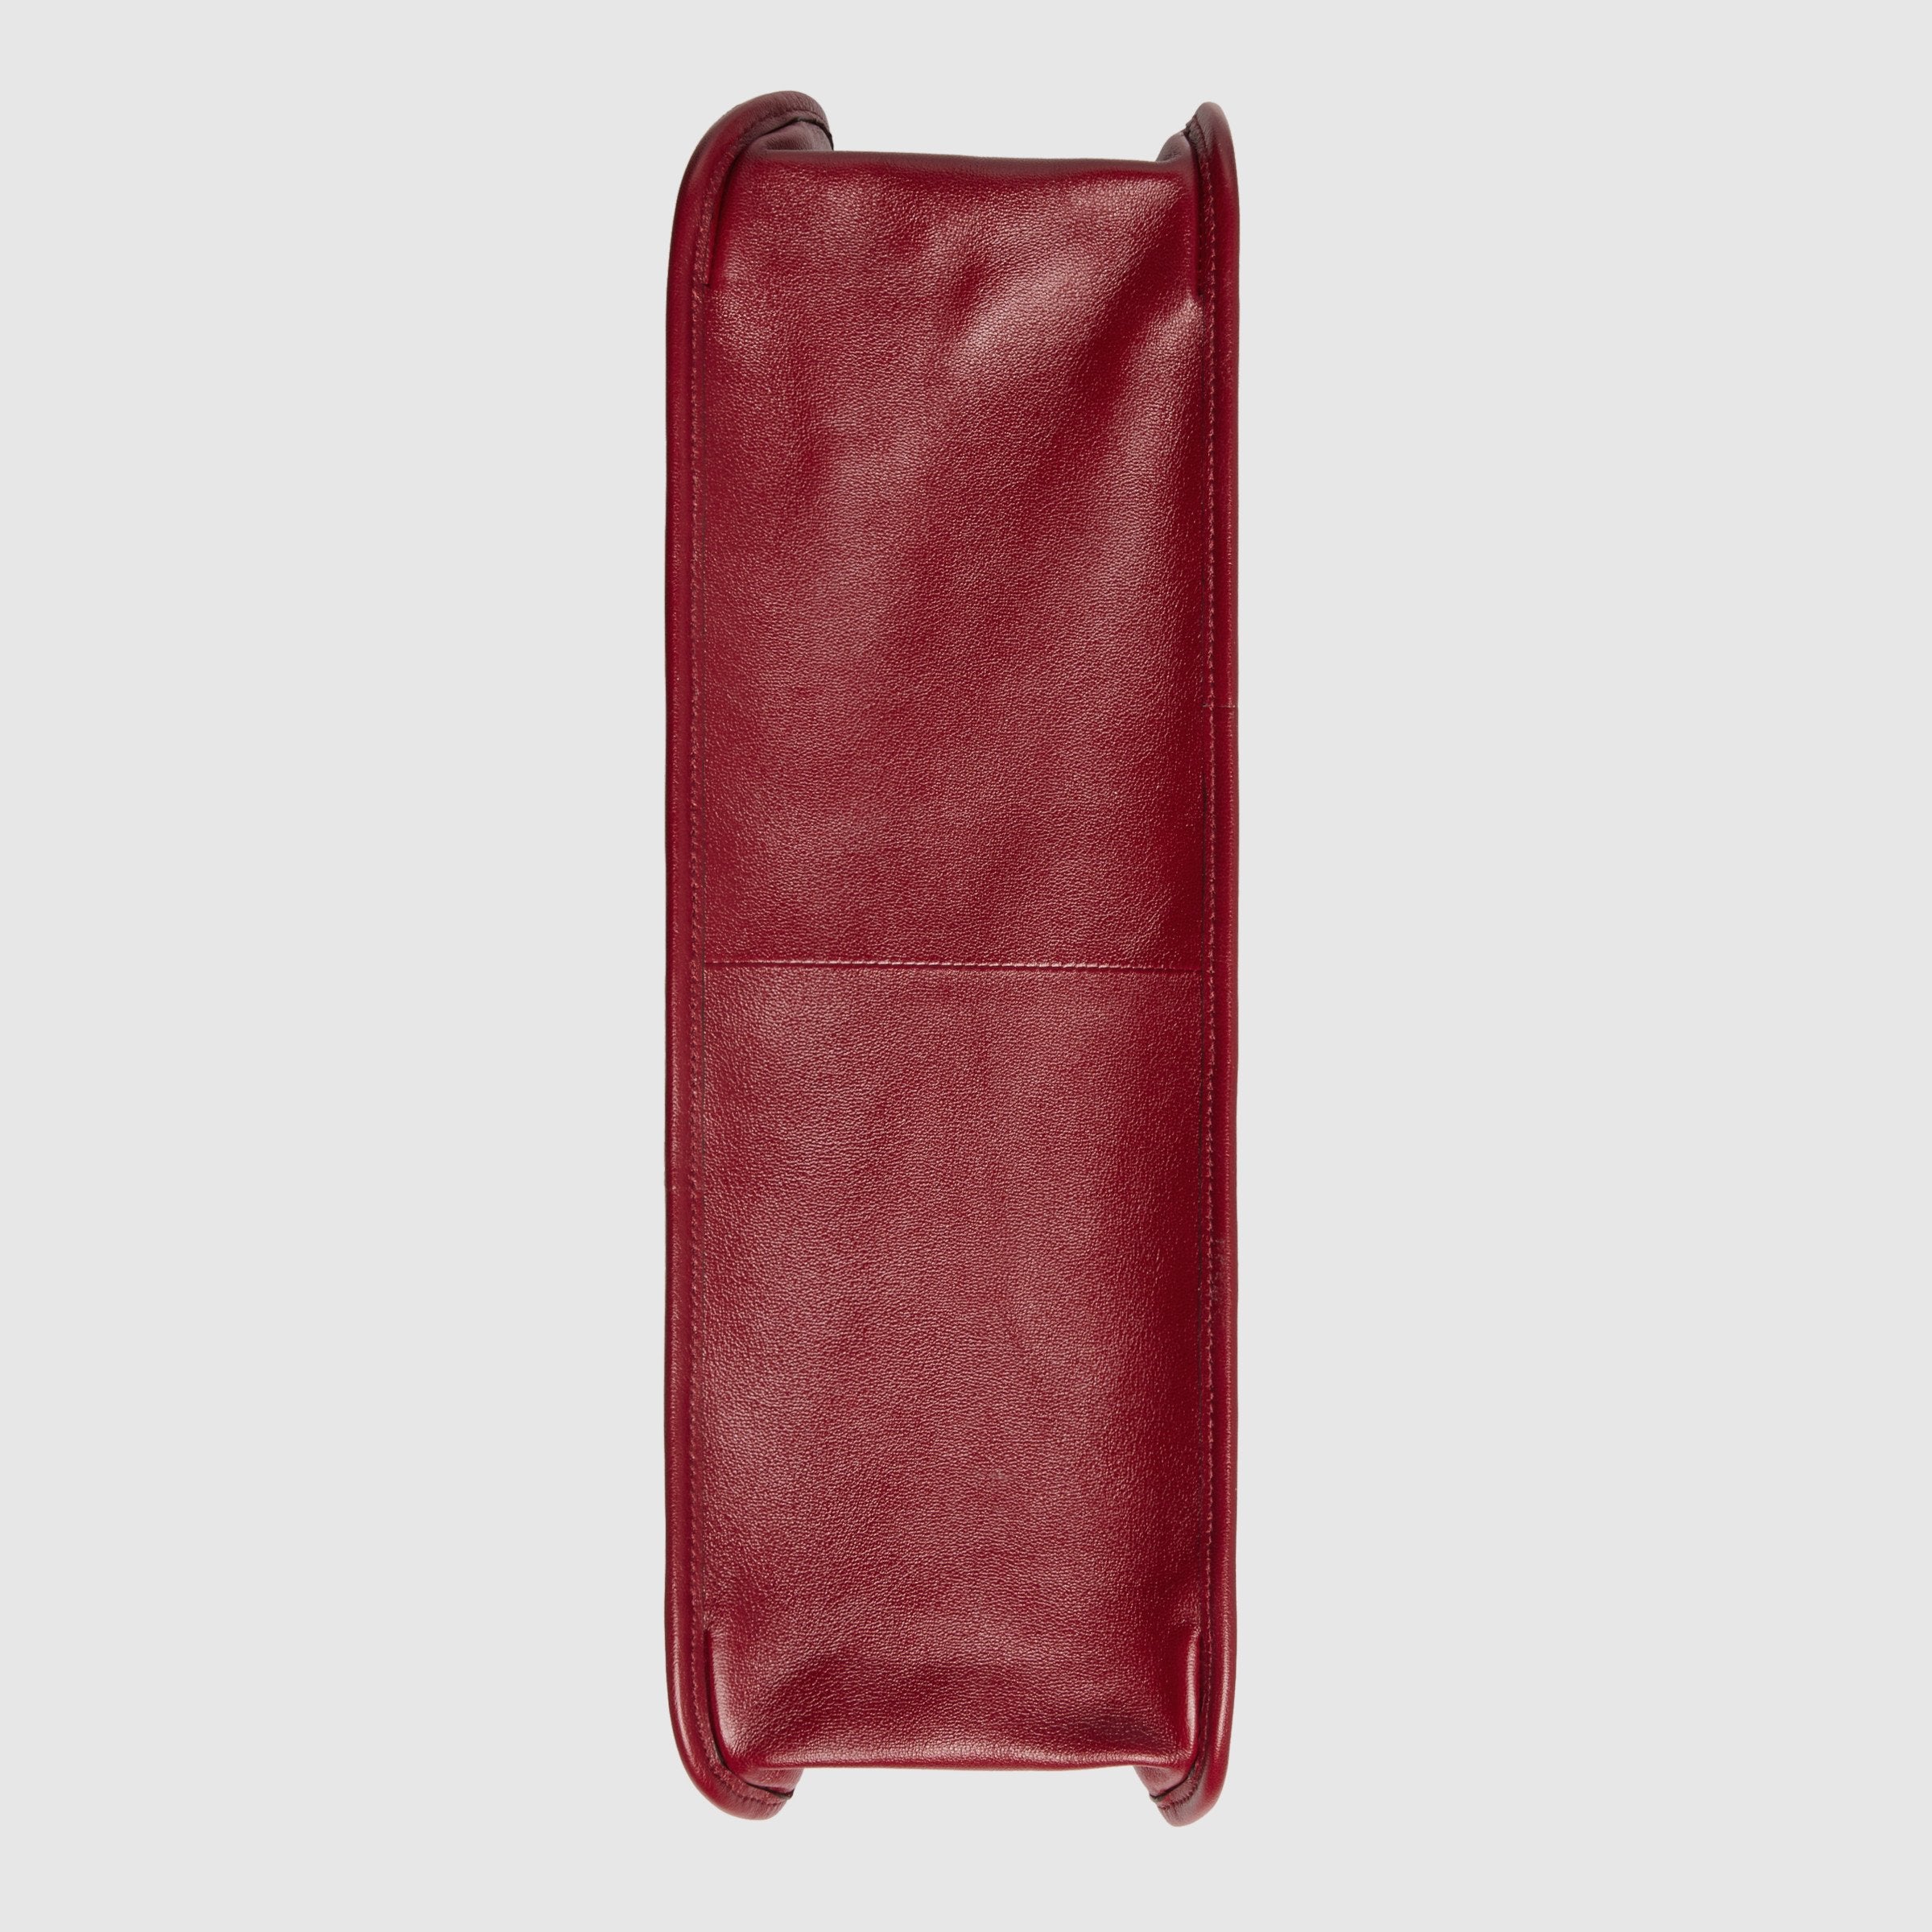 Gucci 1955 Horsebit Large Tote Bag Red